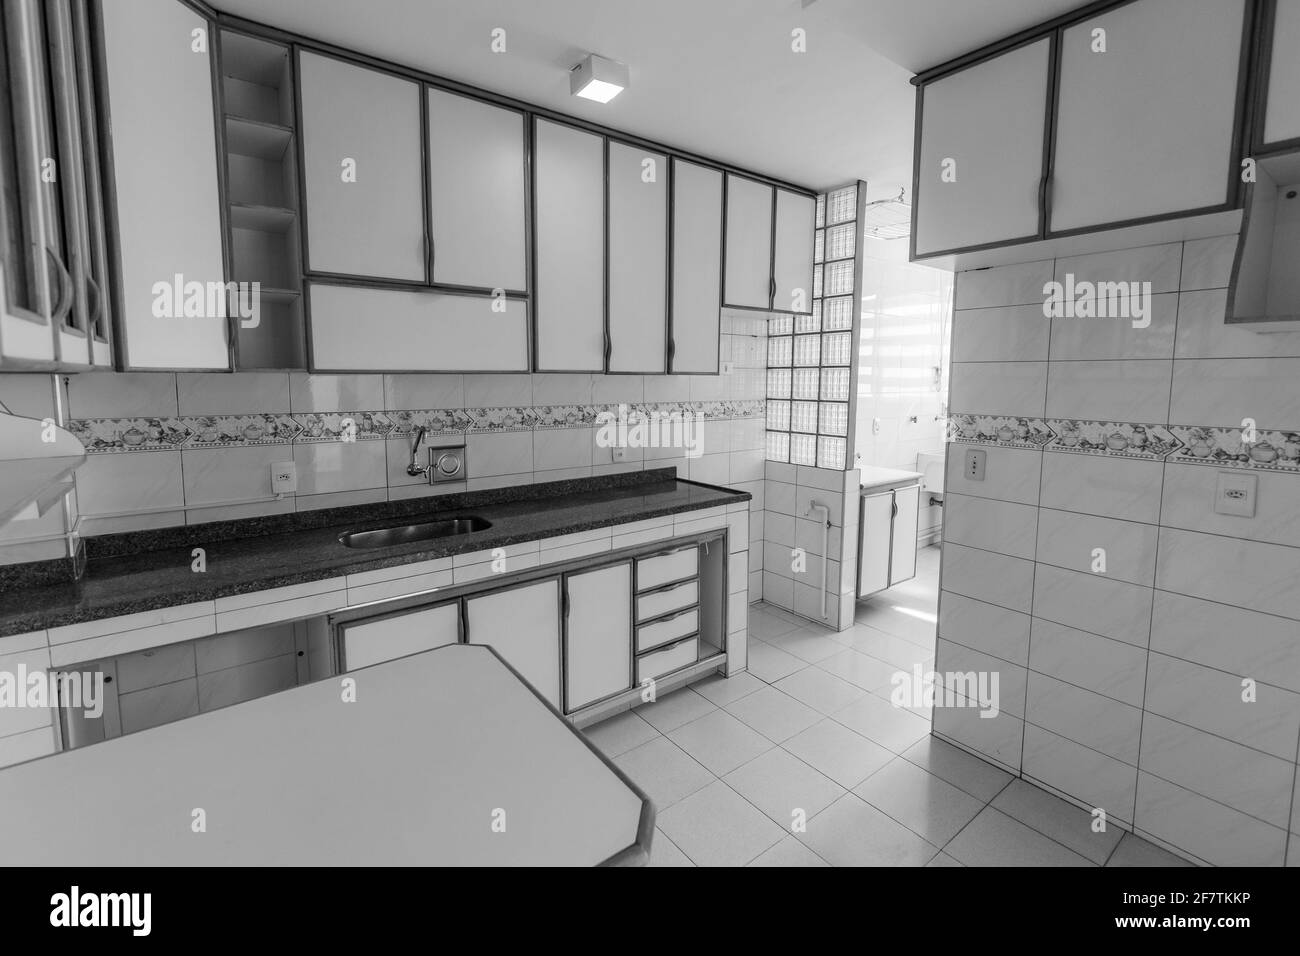 Schöne Aussicht auf eine moderne Küche in weiß und grau Farben Stockfoto